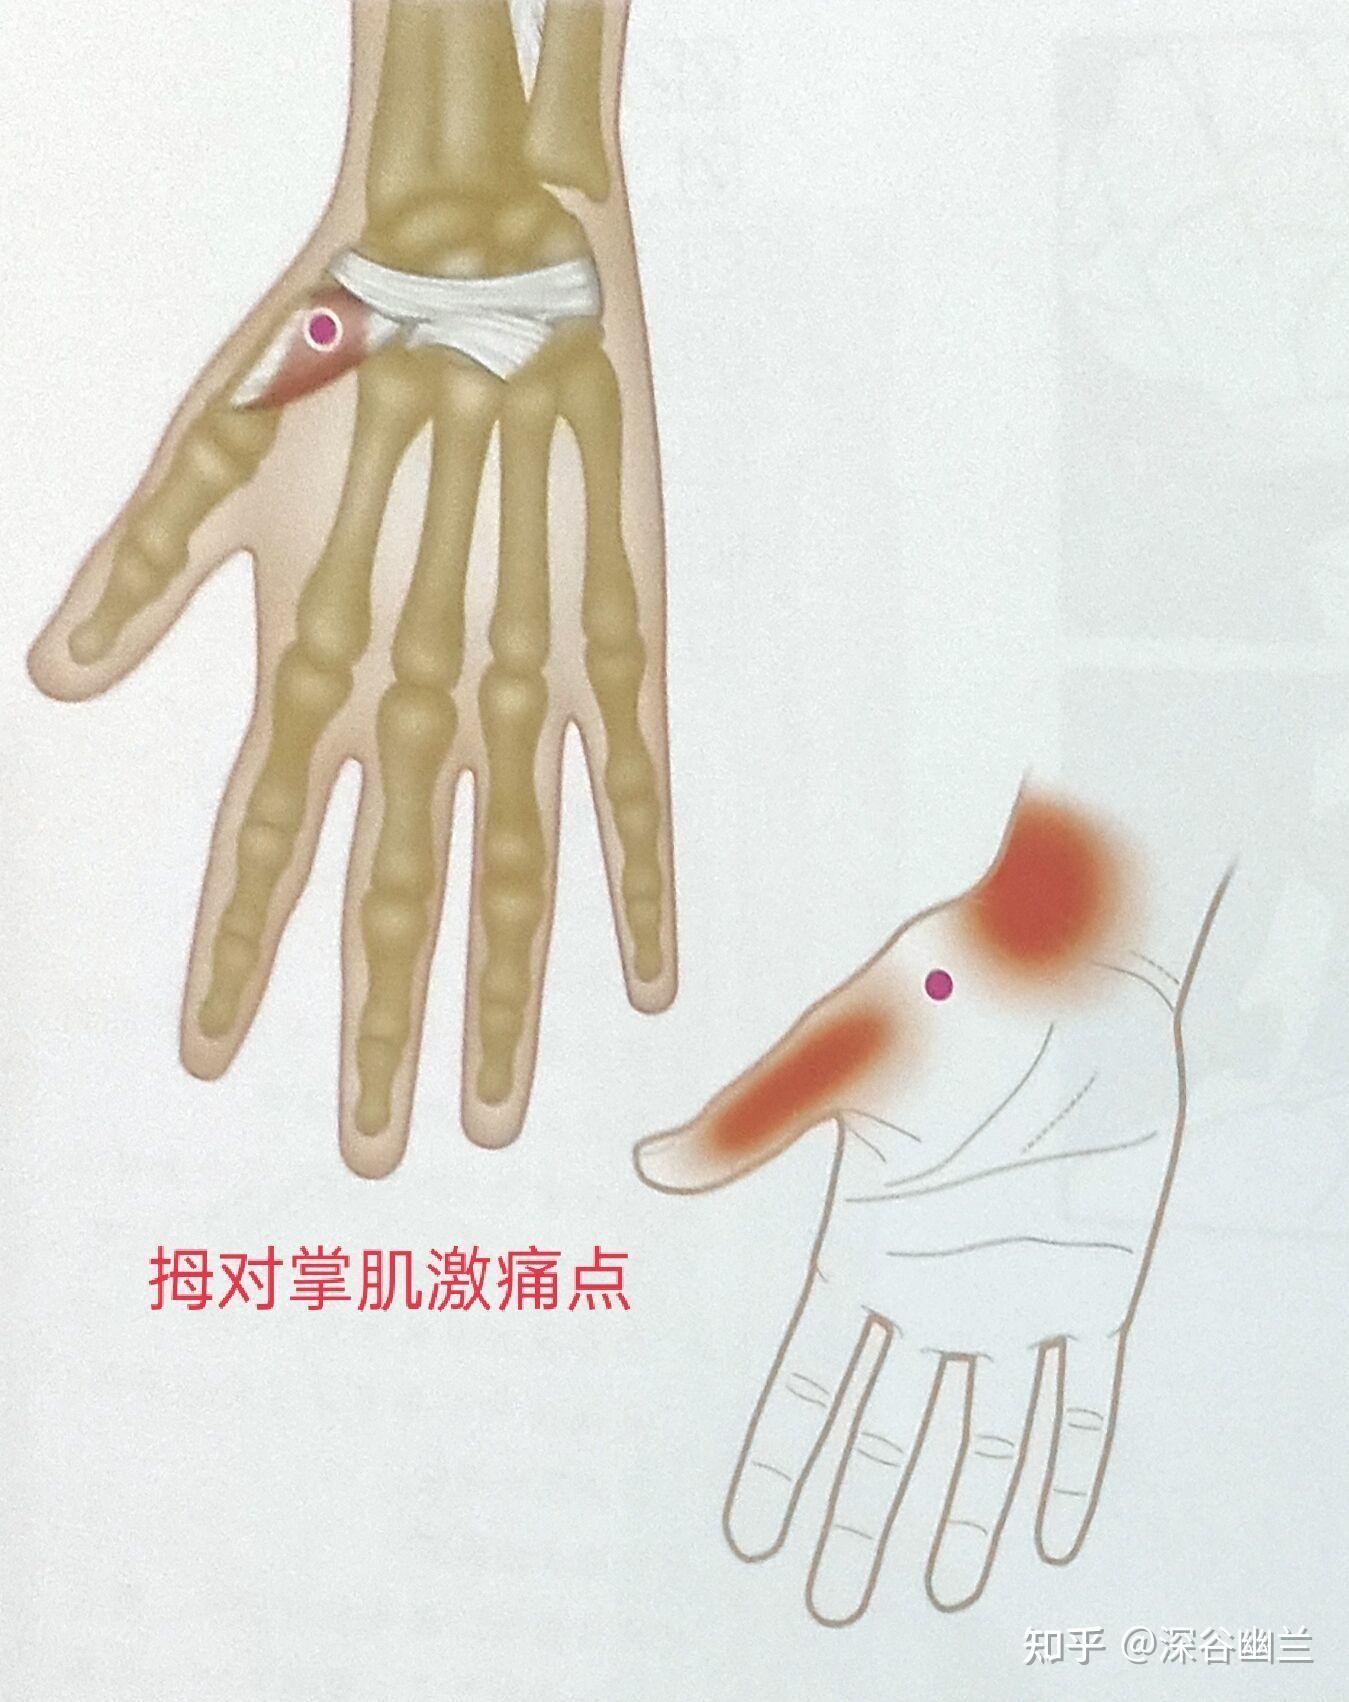 拇收肌激痛点牵涉痛从拇指背面和掌面局部至掌指关节周围的疼痛,辐射